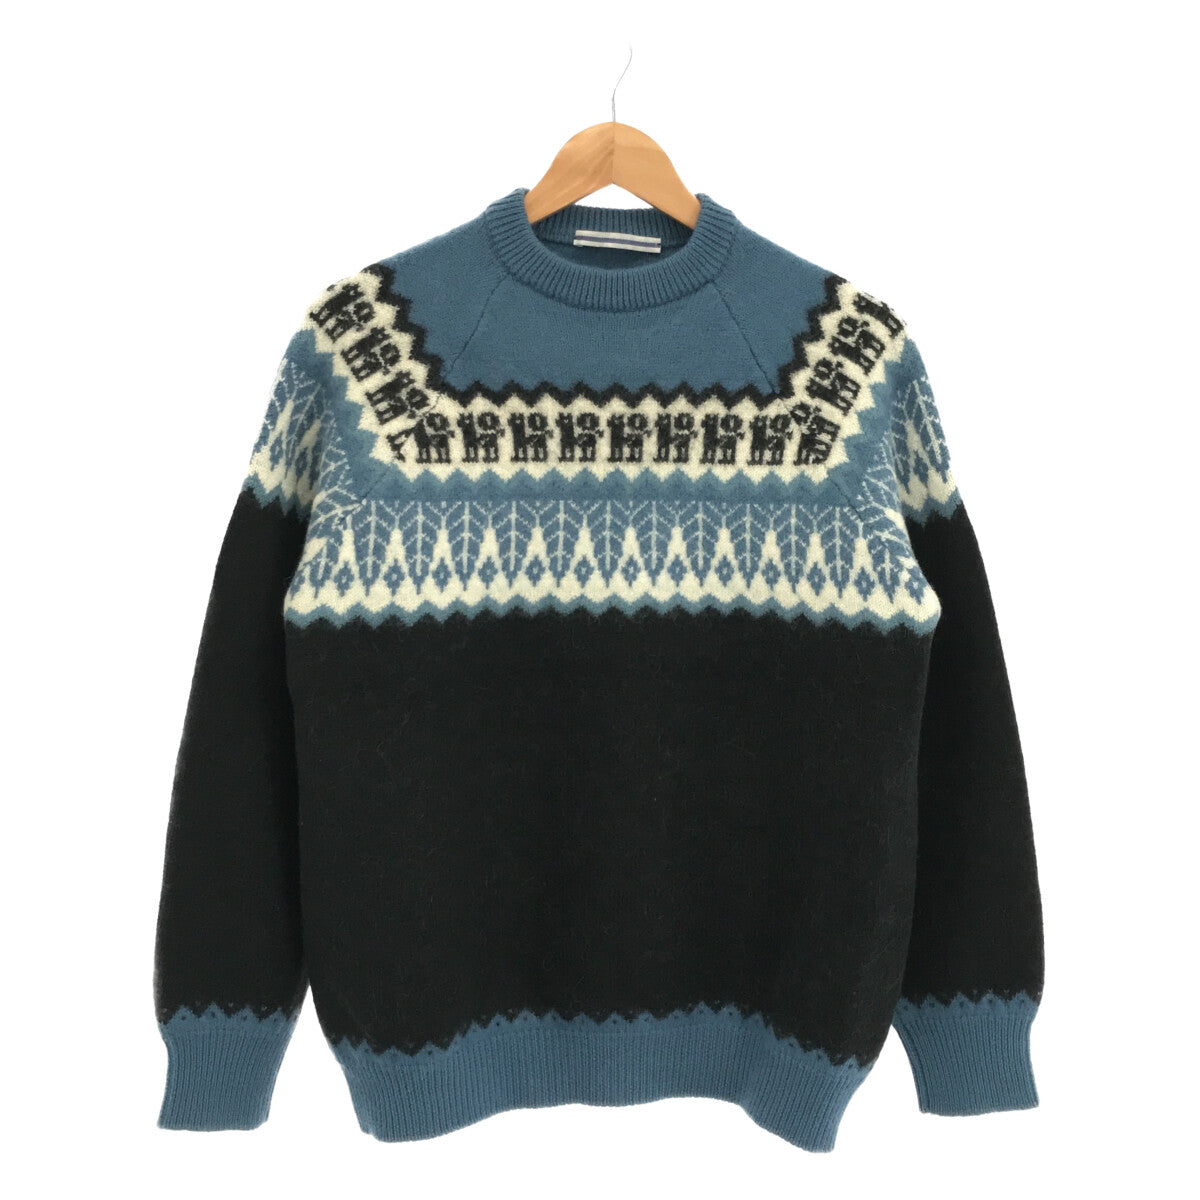 Cristaseya / クリスタセヤ | yak wool ribbed raglan sweater  ヤクウール リブニットセーター | XL | ブラウン系 | メンズ